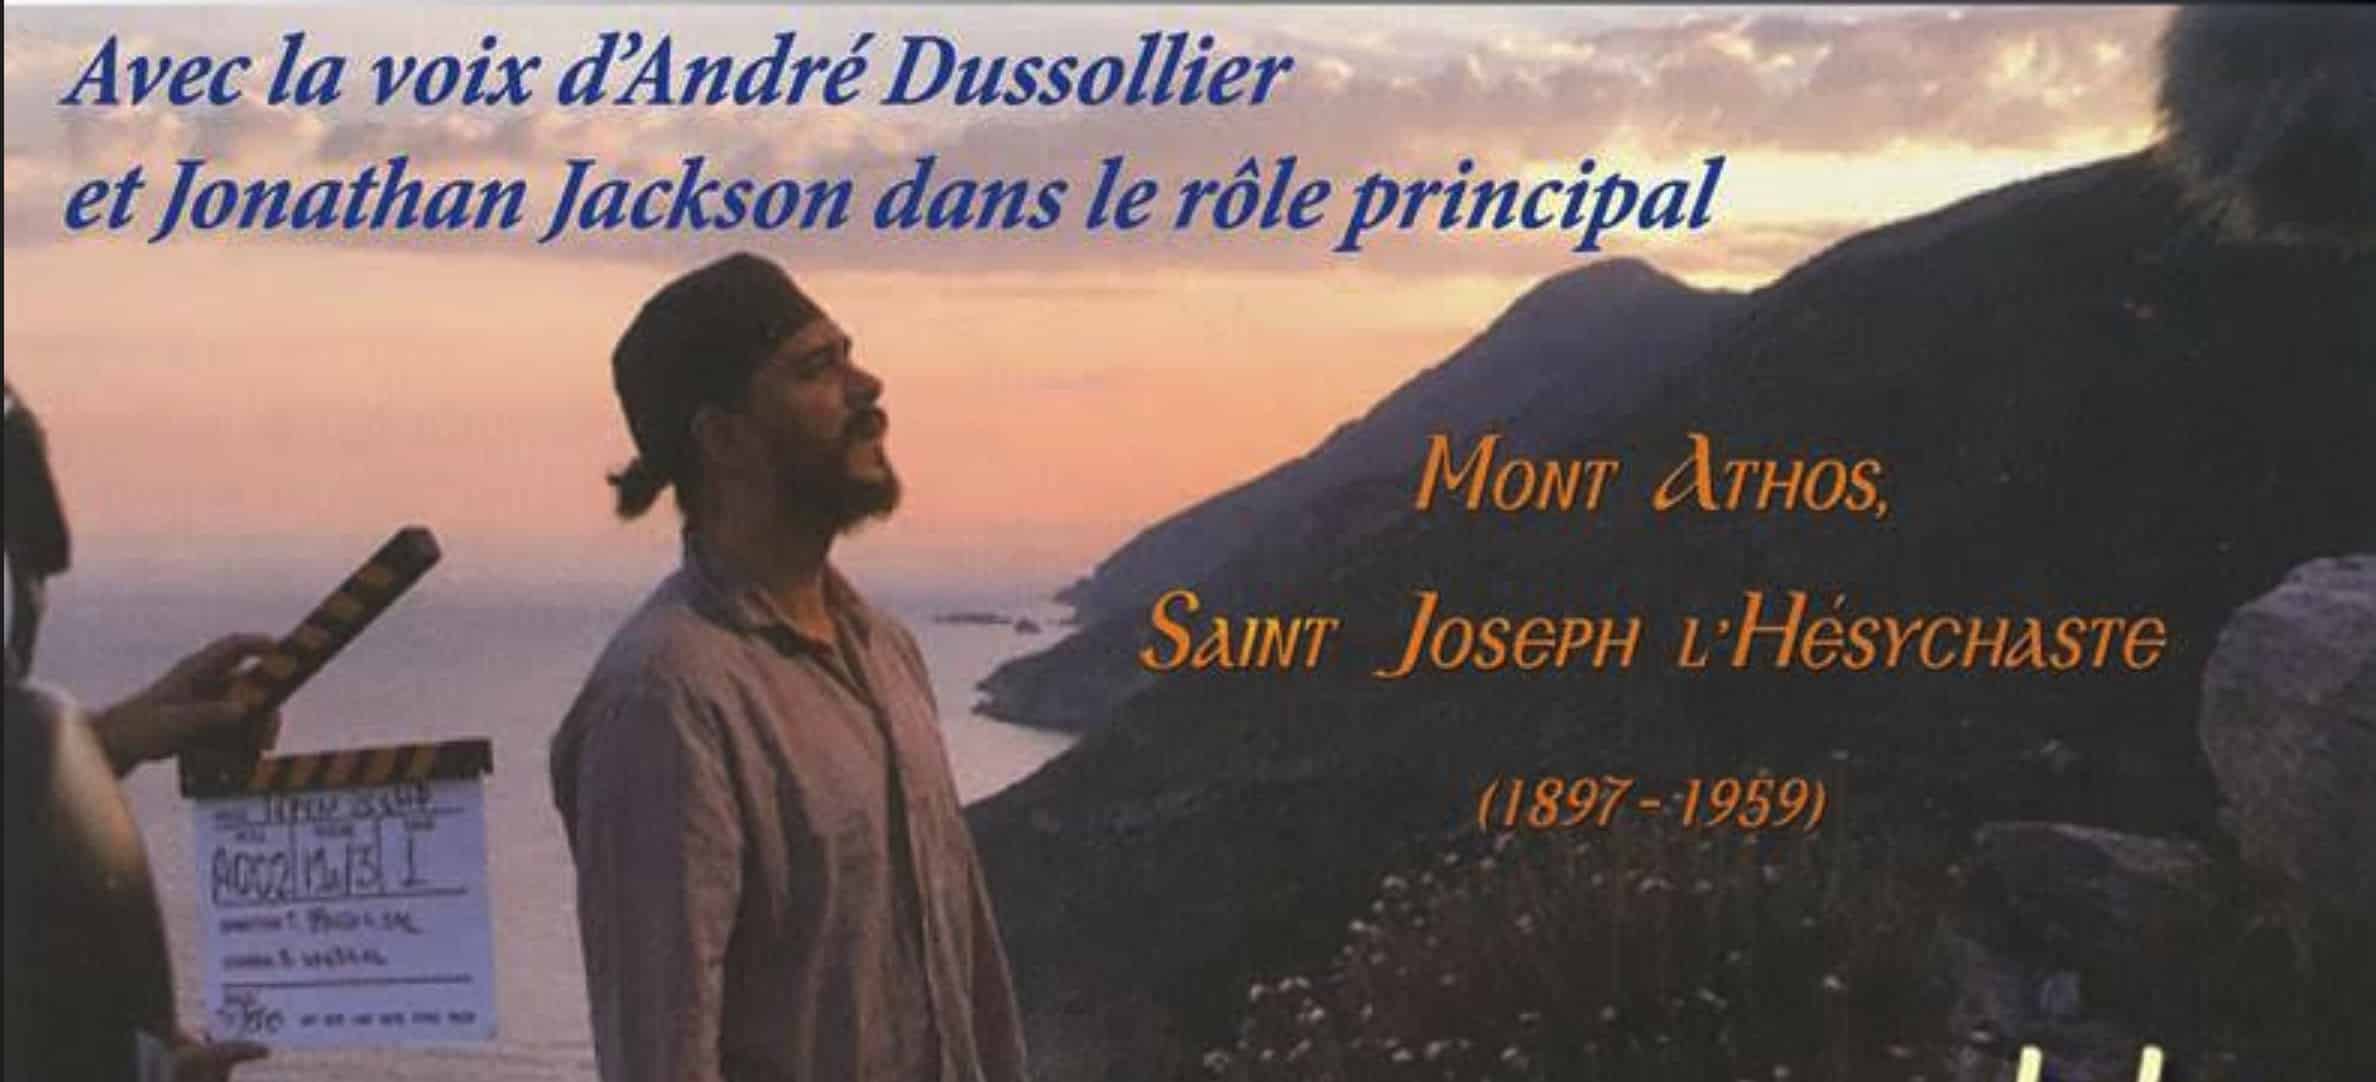 Bande-annonce du documentaire « Mont Athos, saint Joseph l’Hésychaste » sur KTO du 30 novembre au 6 décembre 2022￼